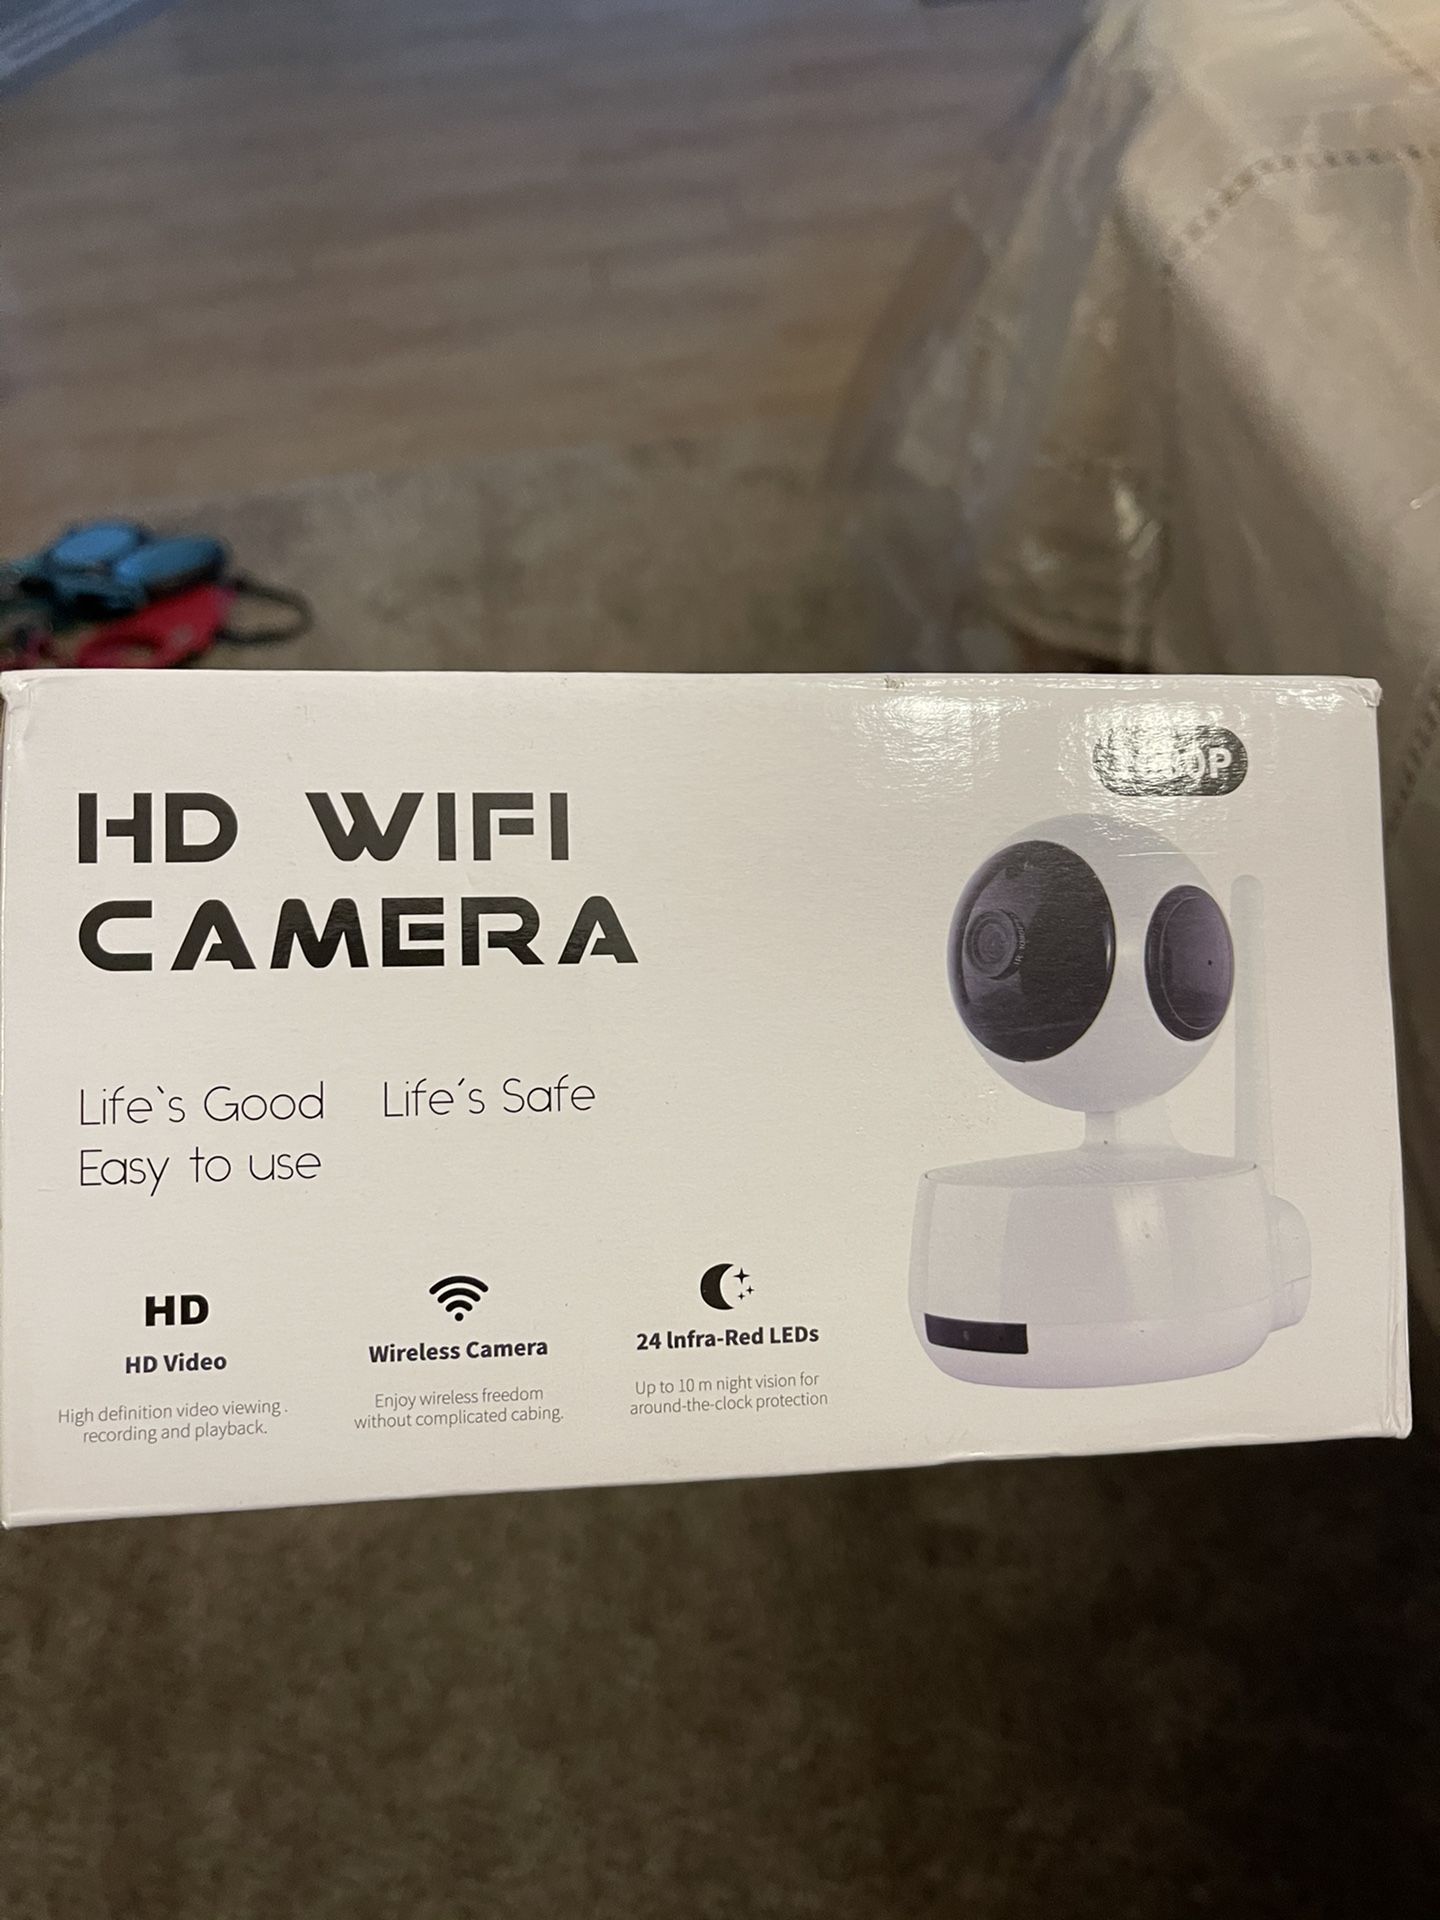 HD WiFi Camera